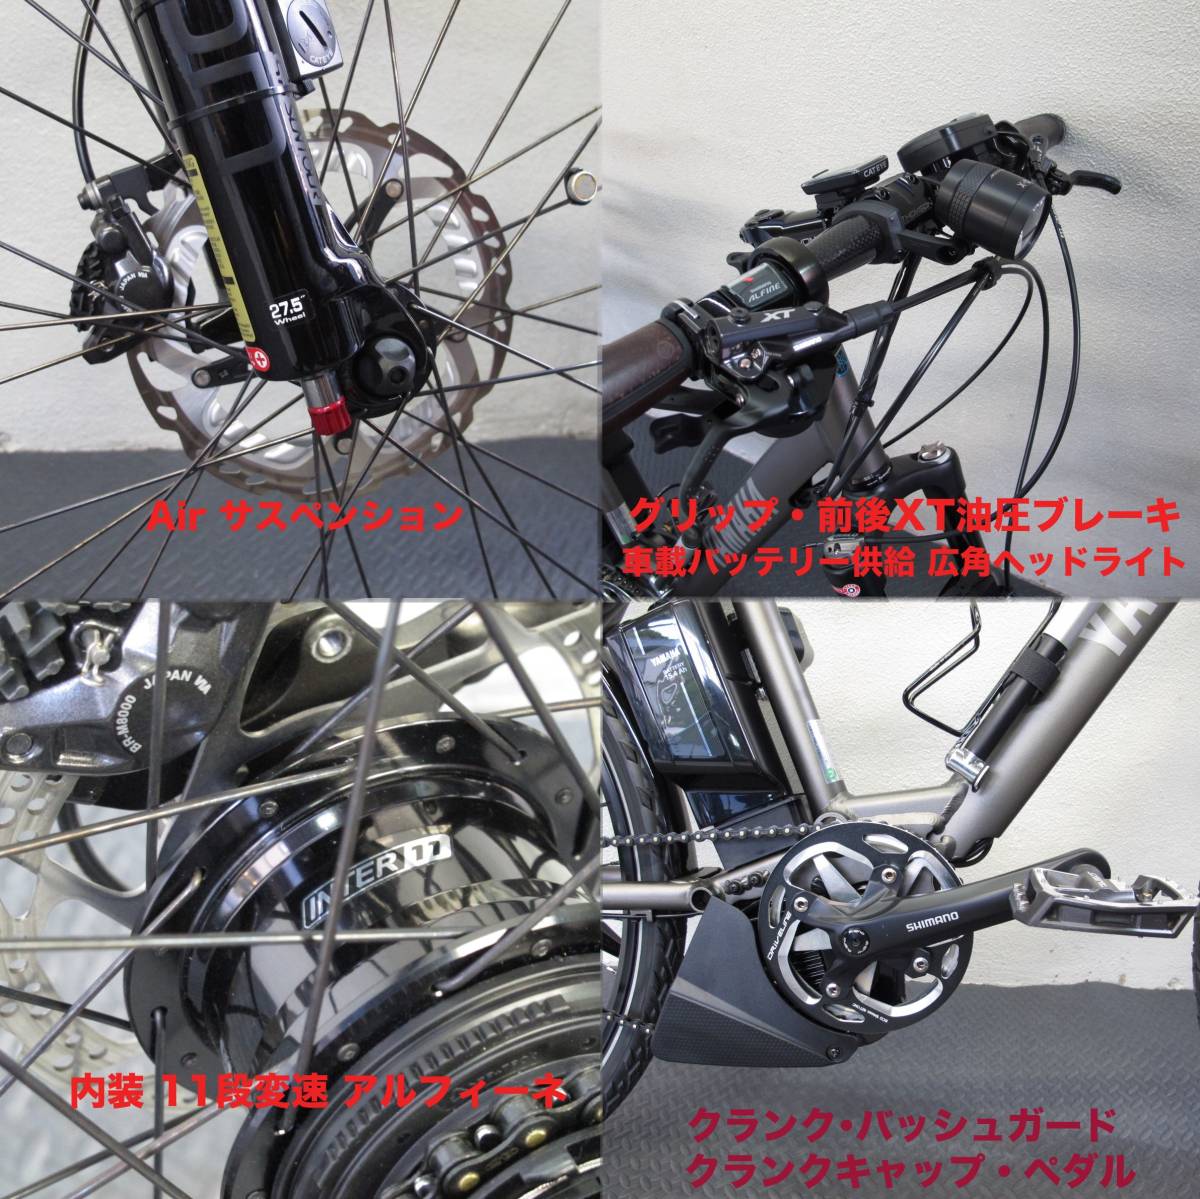  Kansai район +etc. велосипед с электроприводом командировка custom работа ограничитель cut assist район расширение & assist соотношение раз больше * Yamaha Bridgestone *